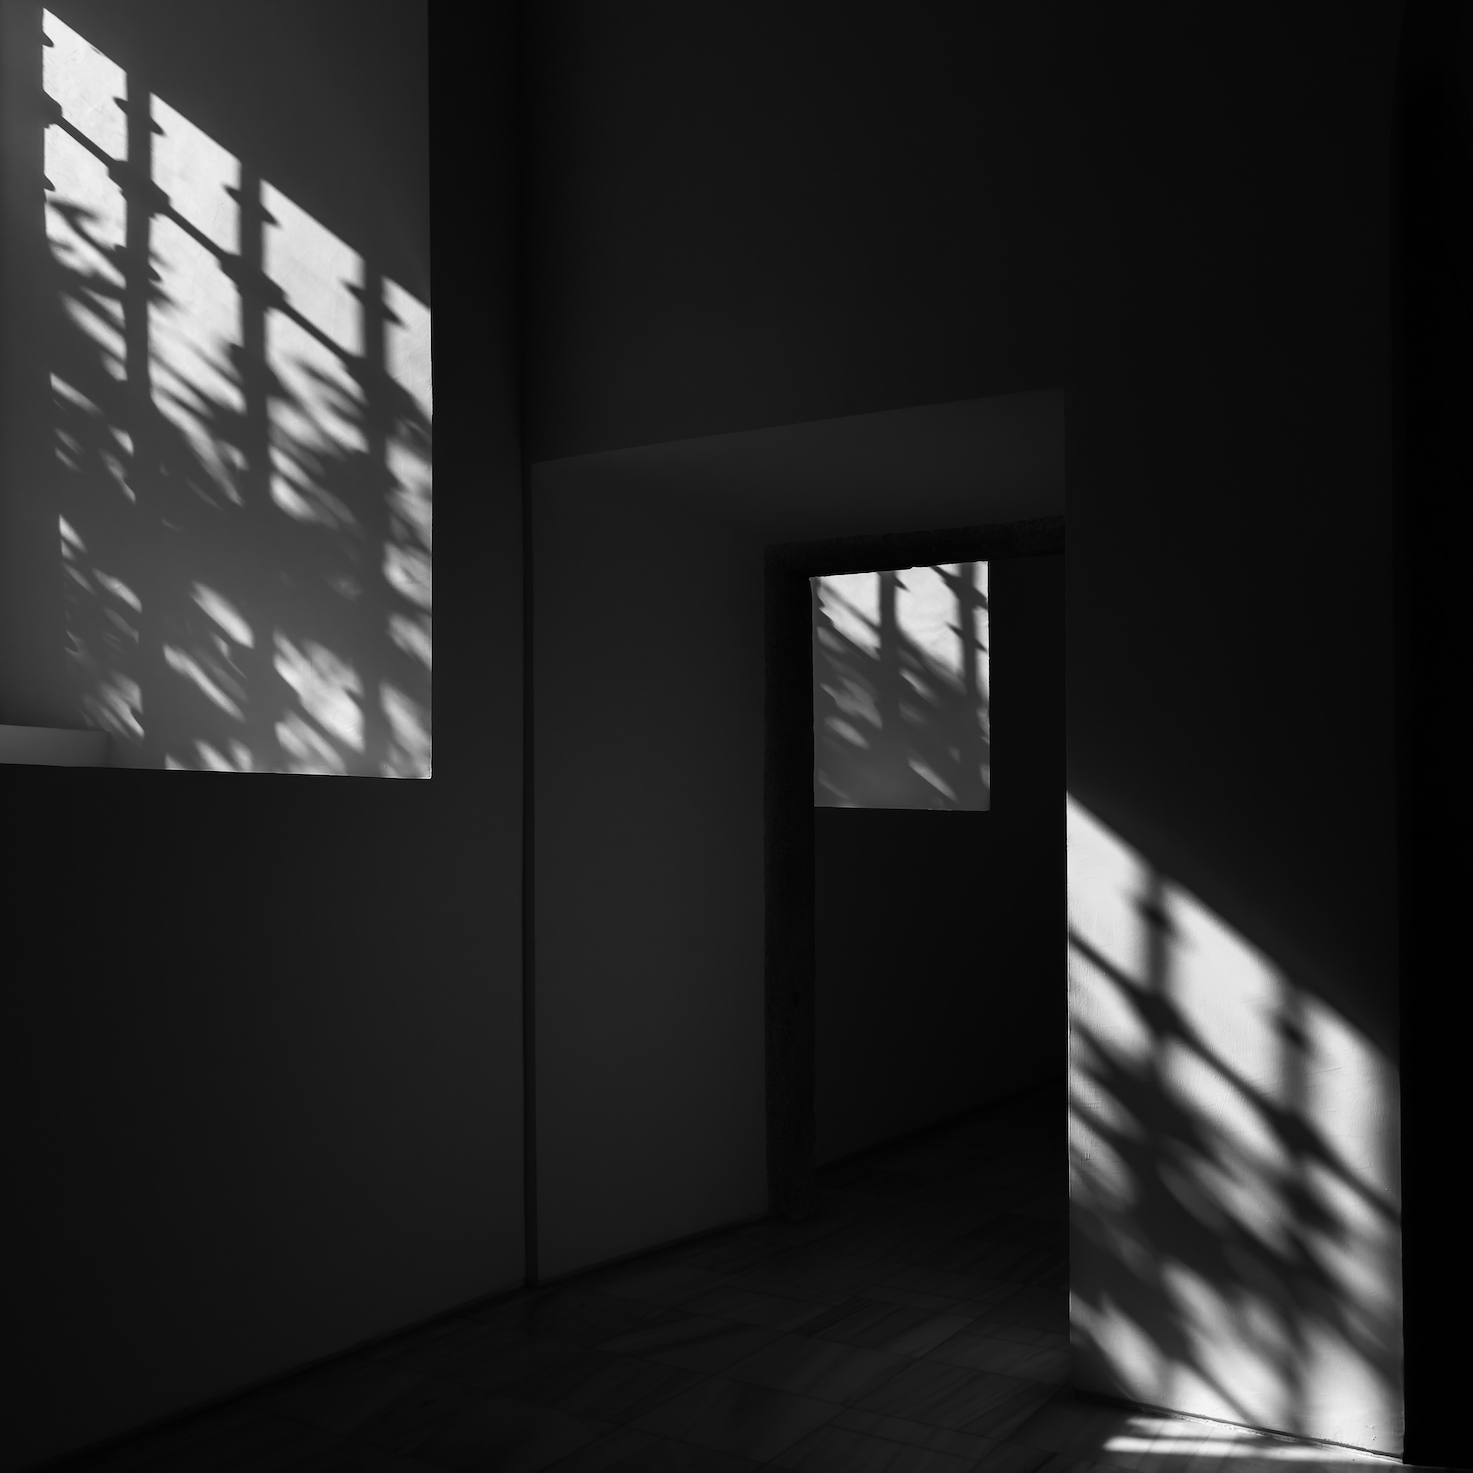 Fotografia | “Seeing the Light” é o novo livro de Francisco Ricarte